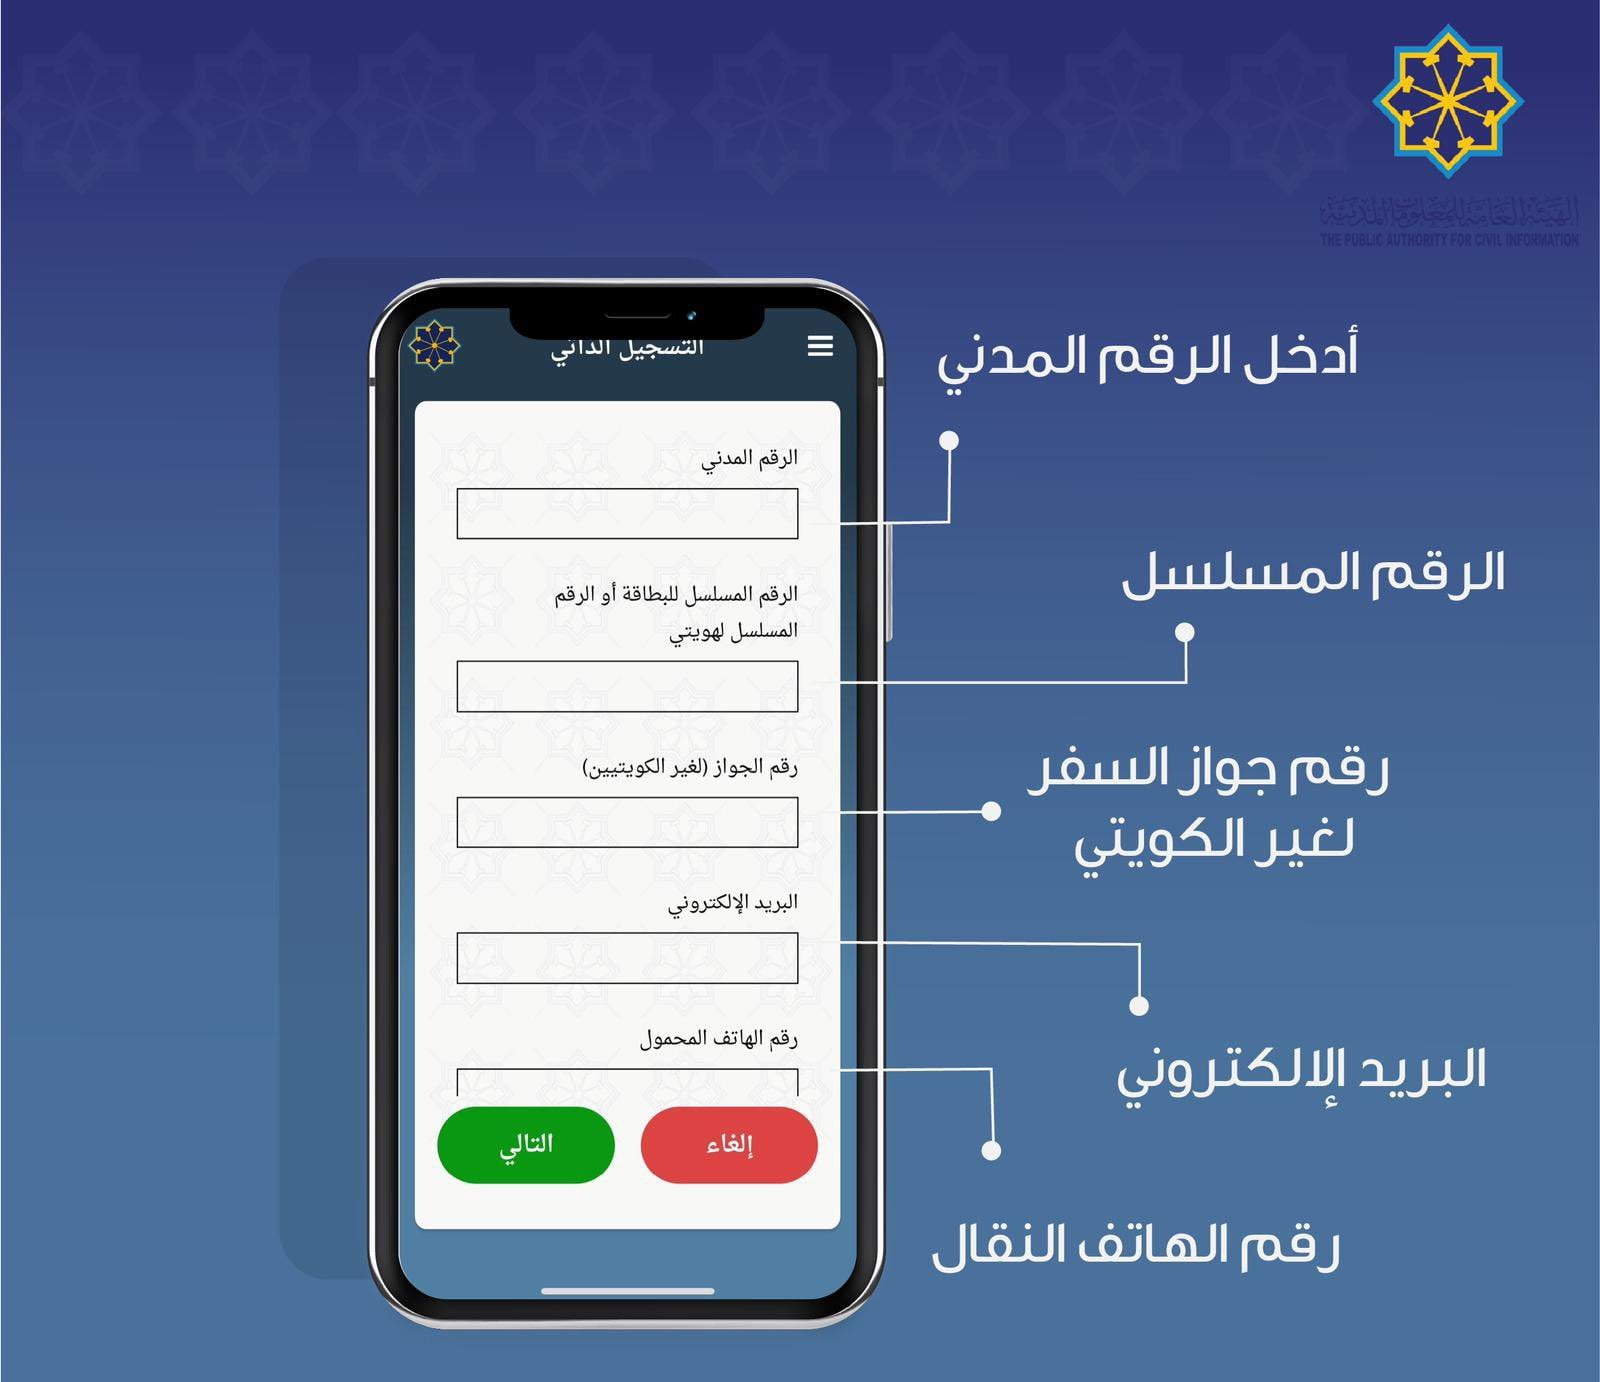 خطوات التسجيل في تطبيق هويتي الكويت بعد التحميل